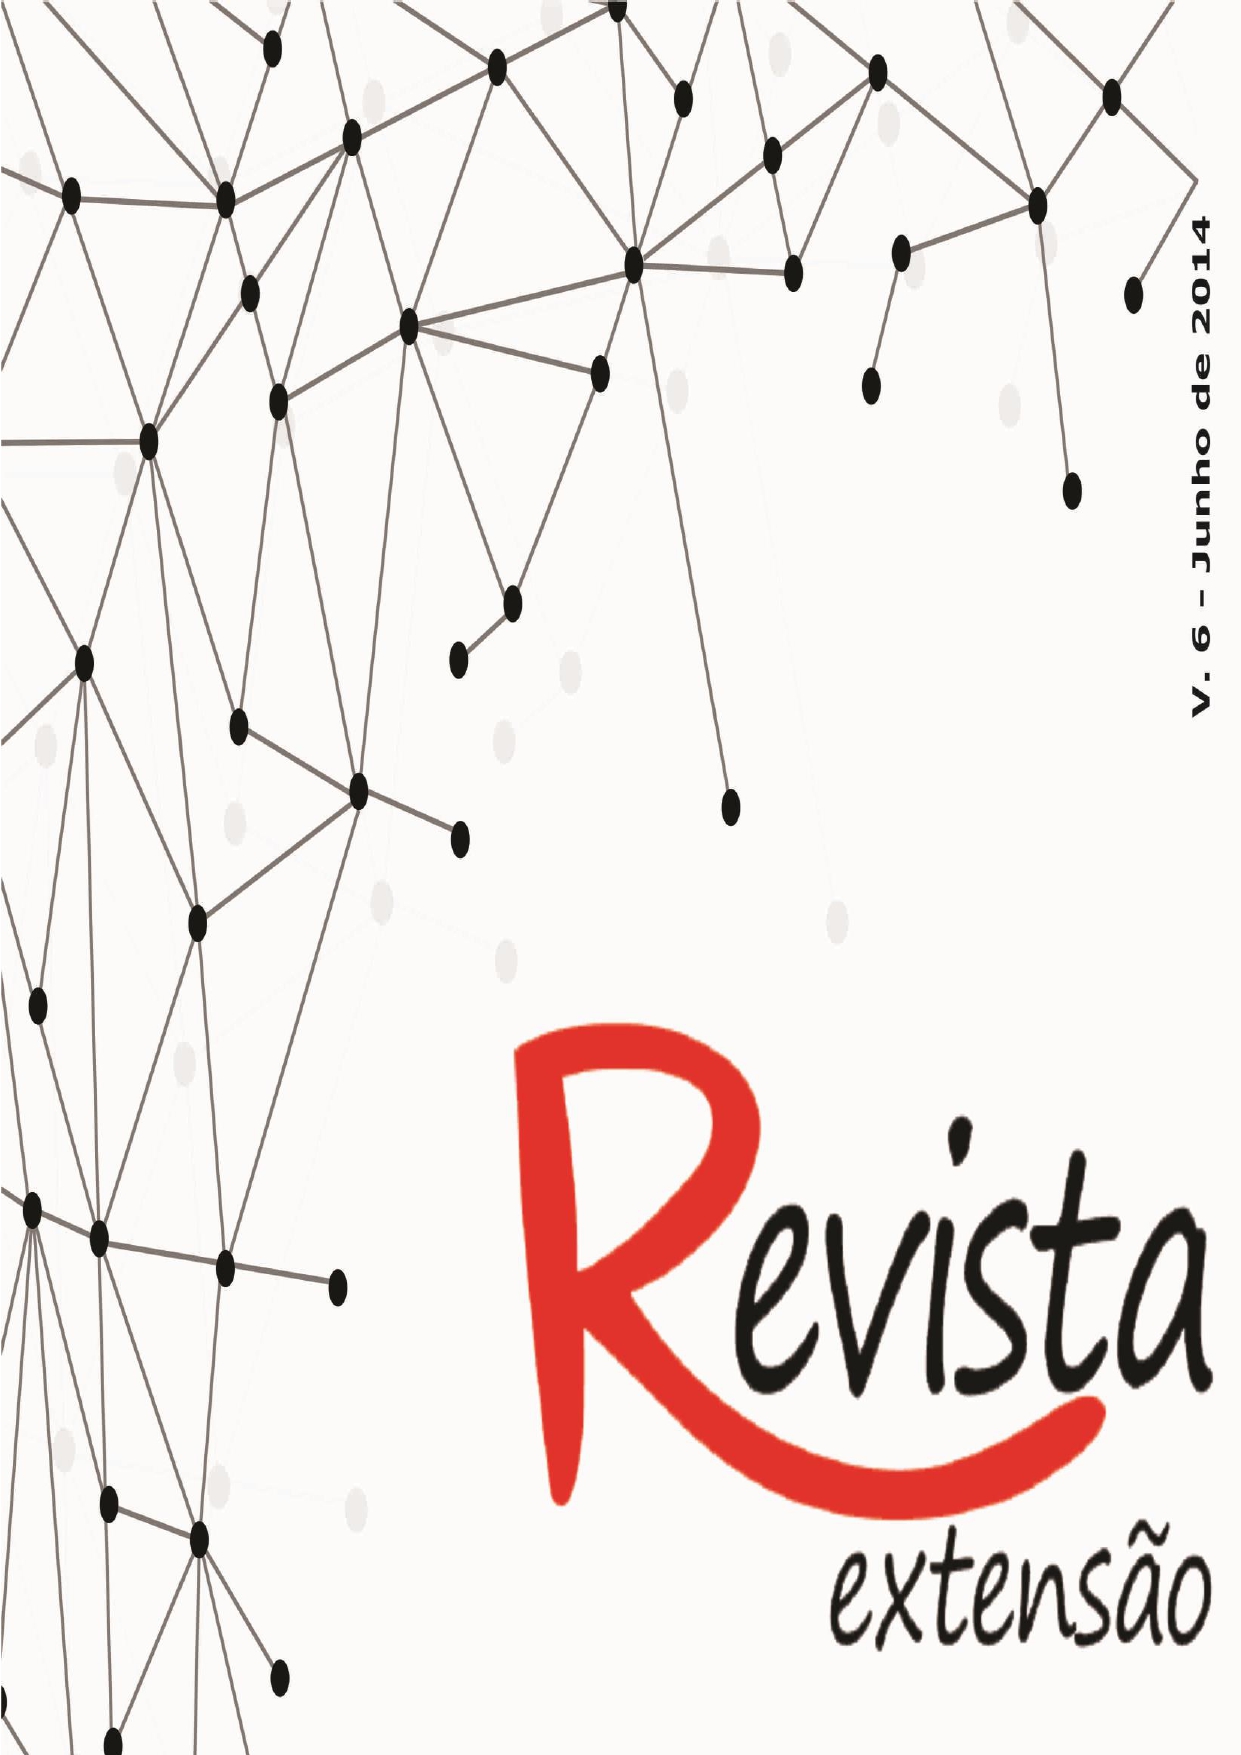 					Ver Vol. 6 (2014): Revista Extensão
				